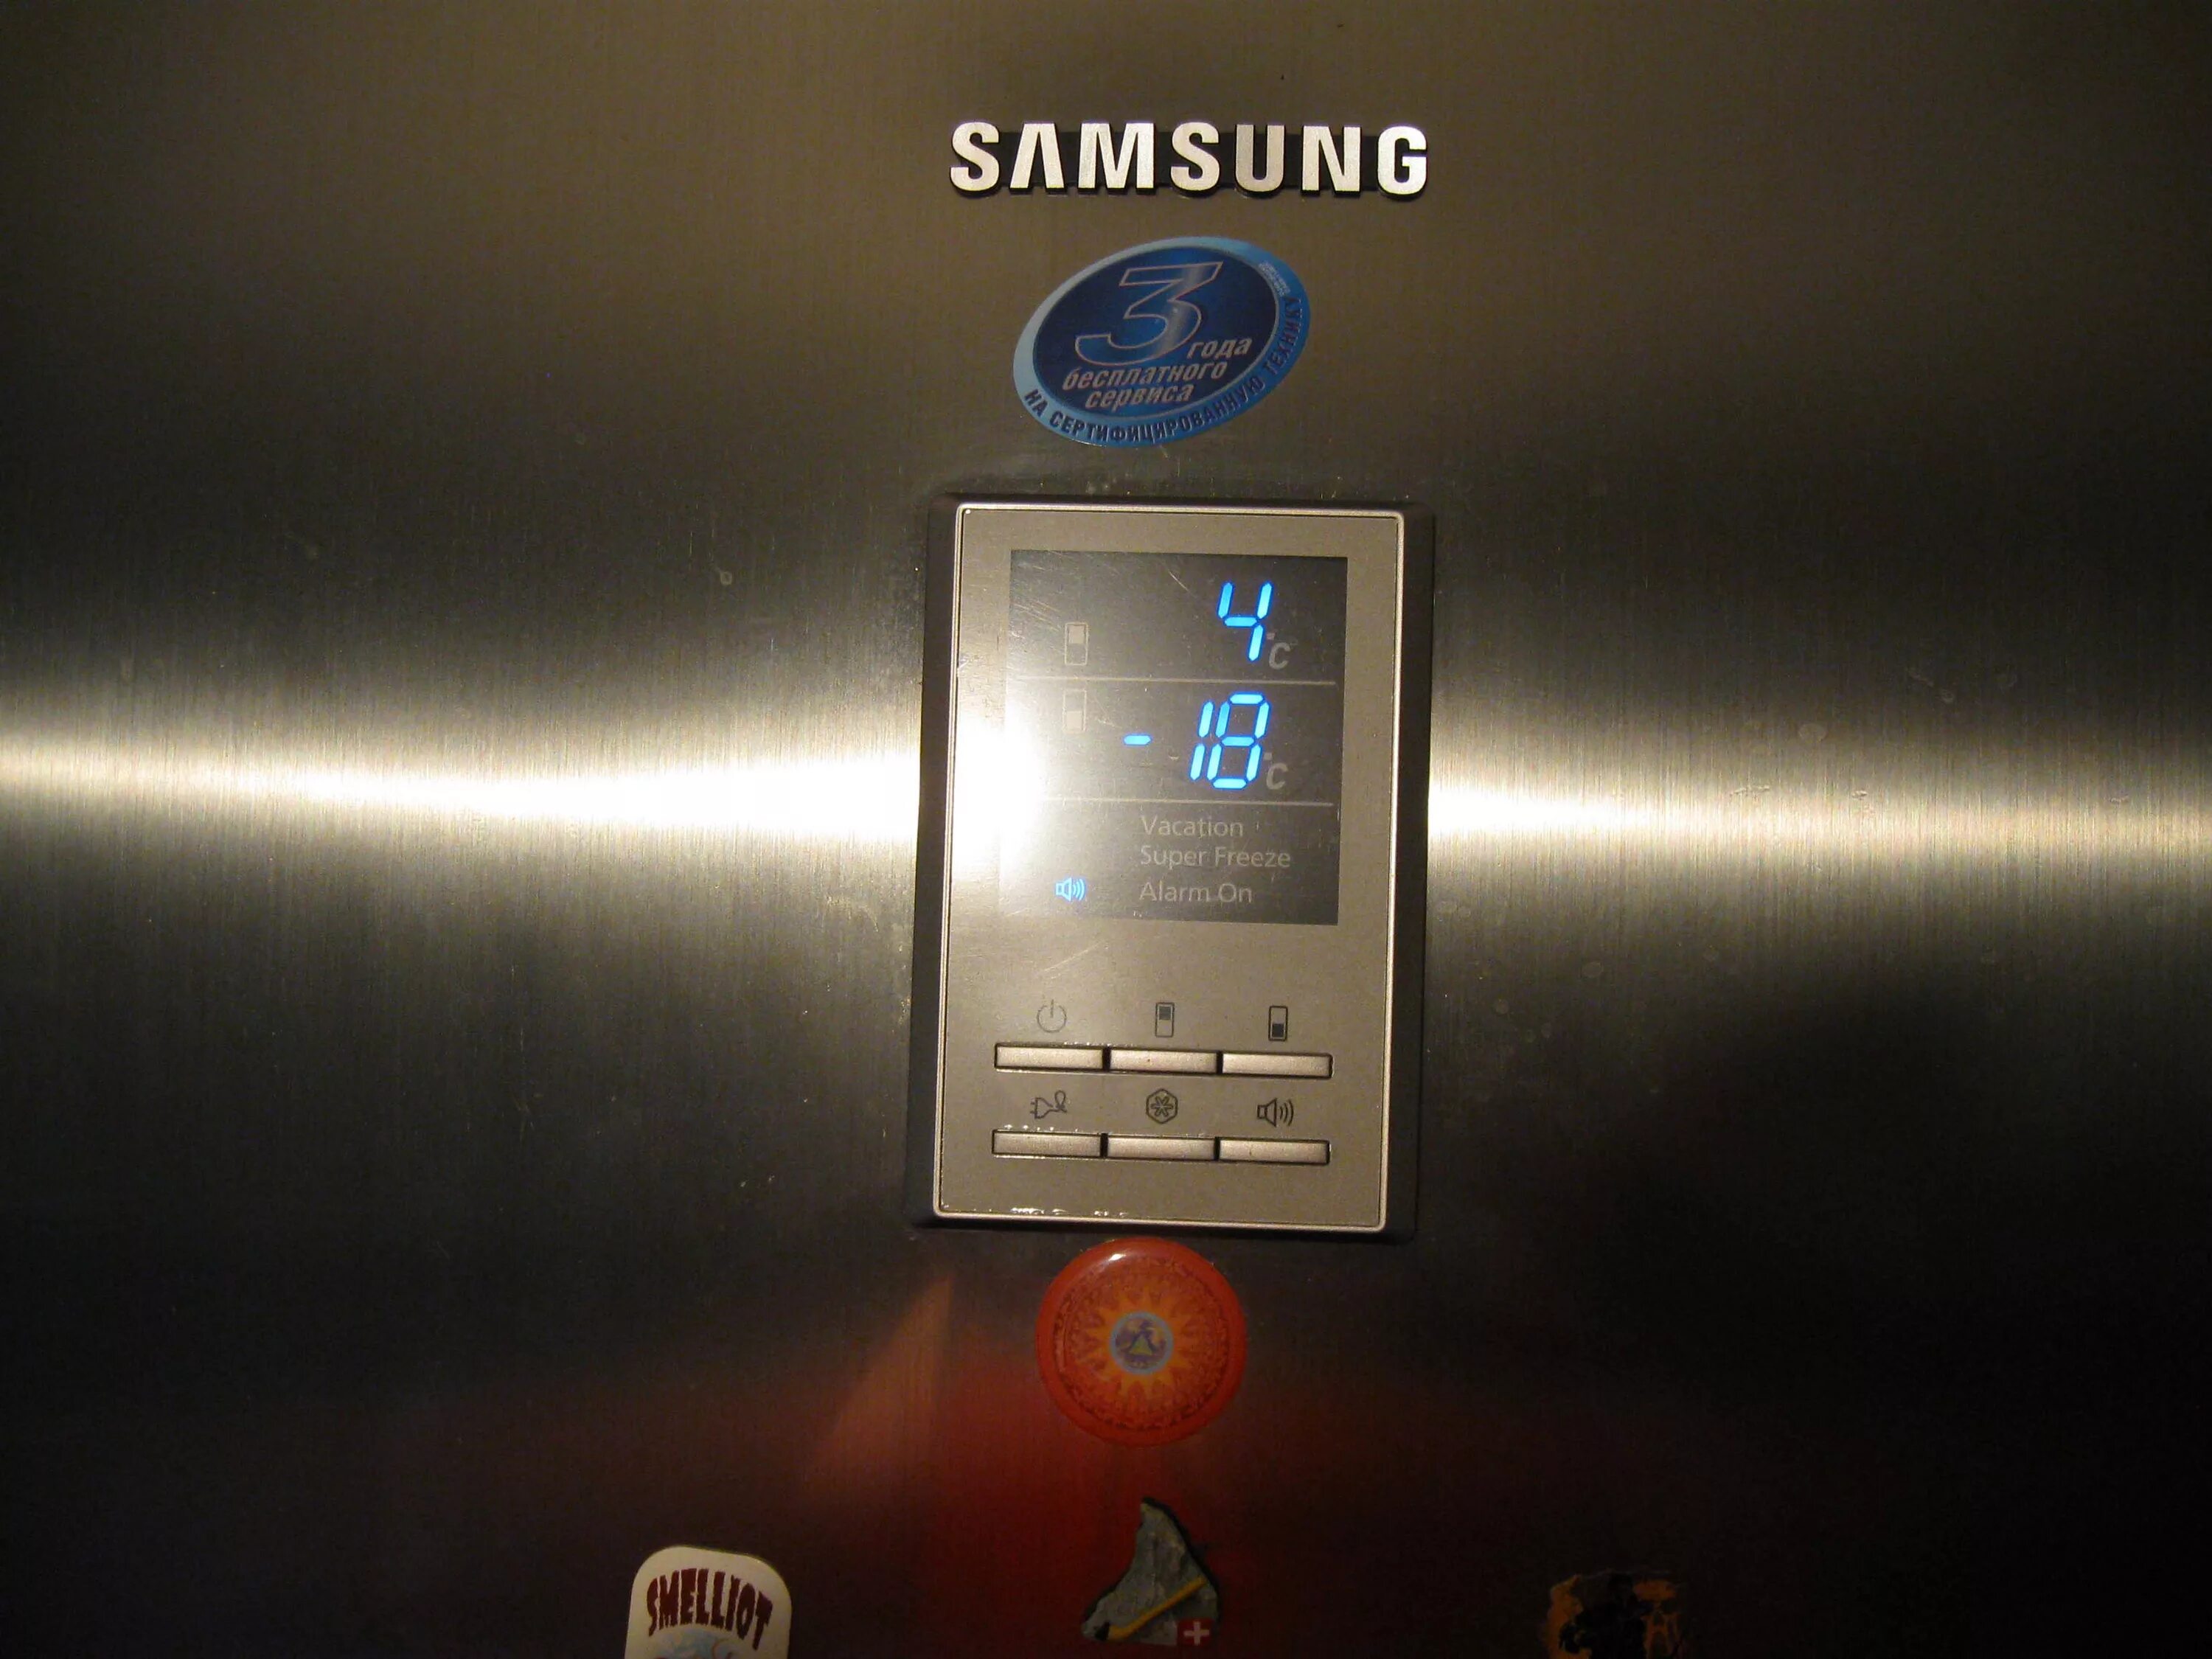 Горит аларм. Дисплей холодильника самсунг rl38hcps. Холодильник Samsung no Frost с экраном. Холодильник самсунг двухкамерный управление дисплеем 3 кнопки. Холодильник самсунг двухкамерный с дисплеем на двери 2010 года.